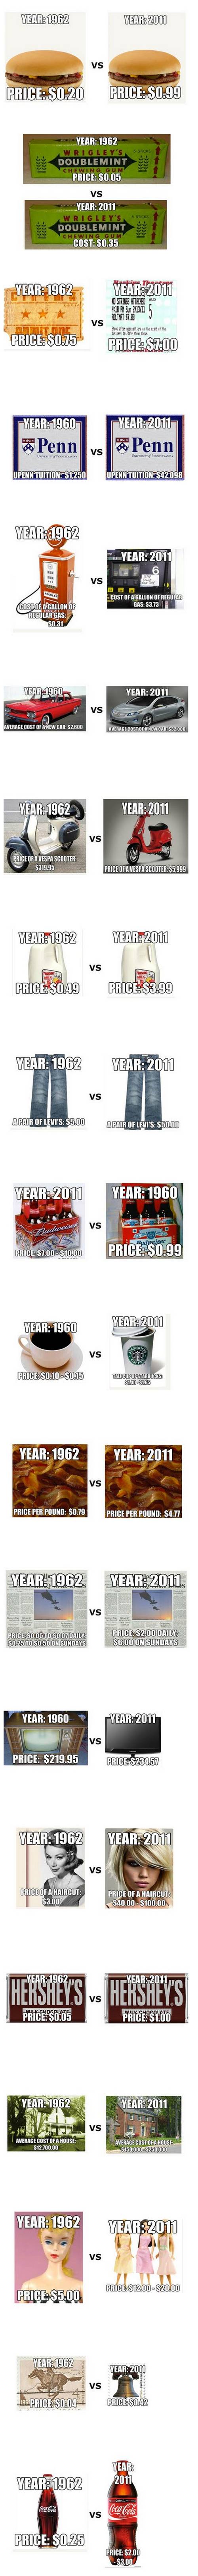 Comparando 1962 con el 2011 y como han cambiado algunos productos y servicios 1